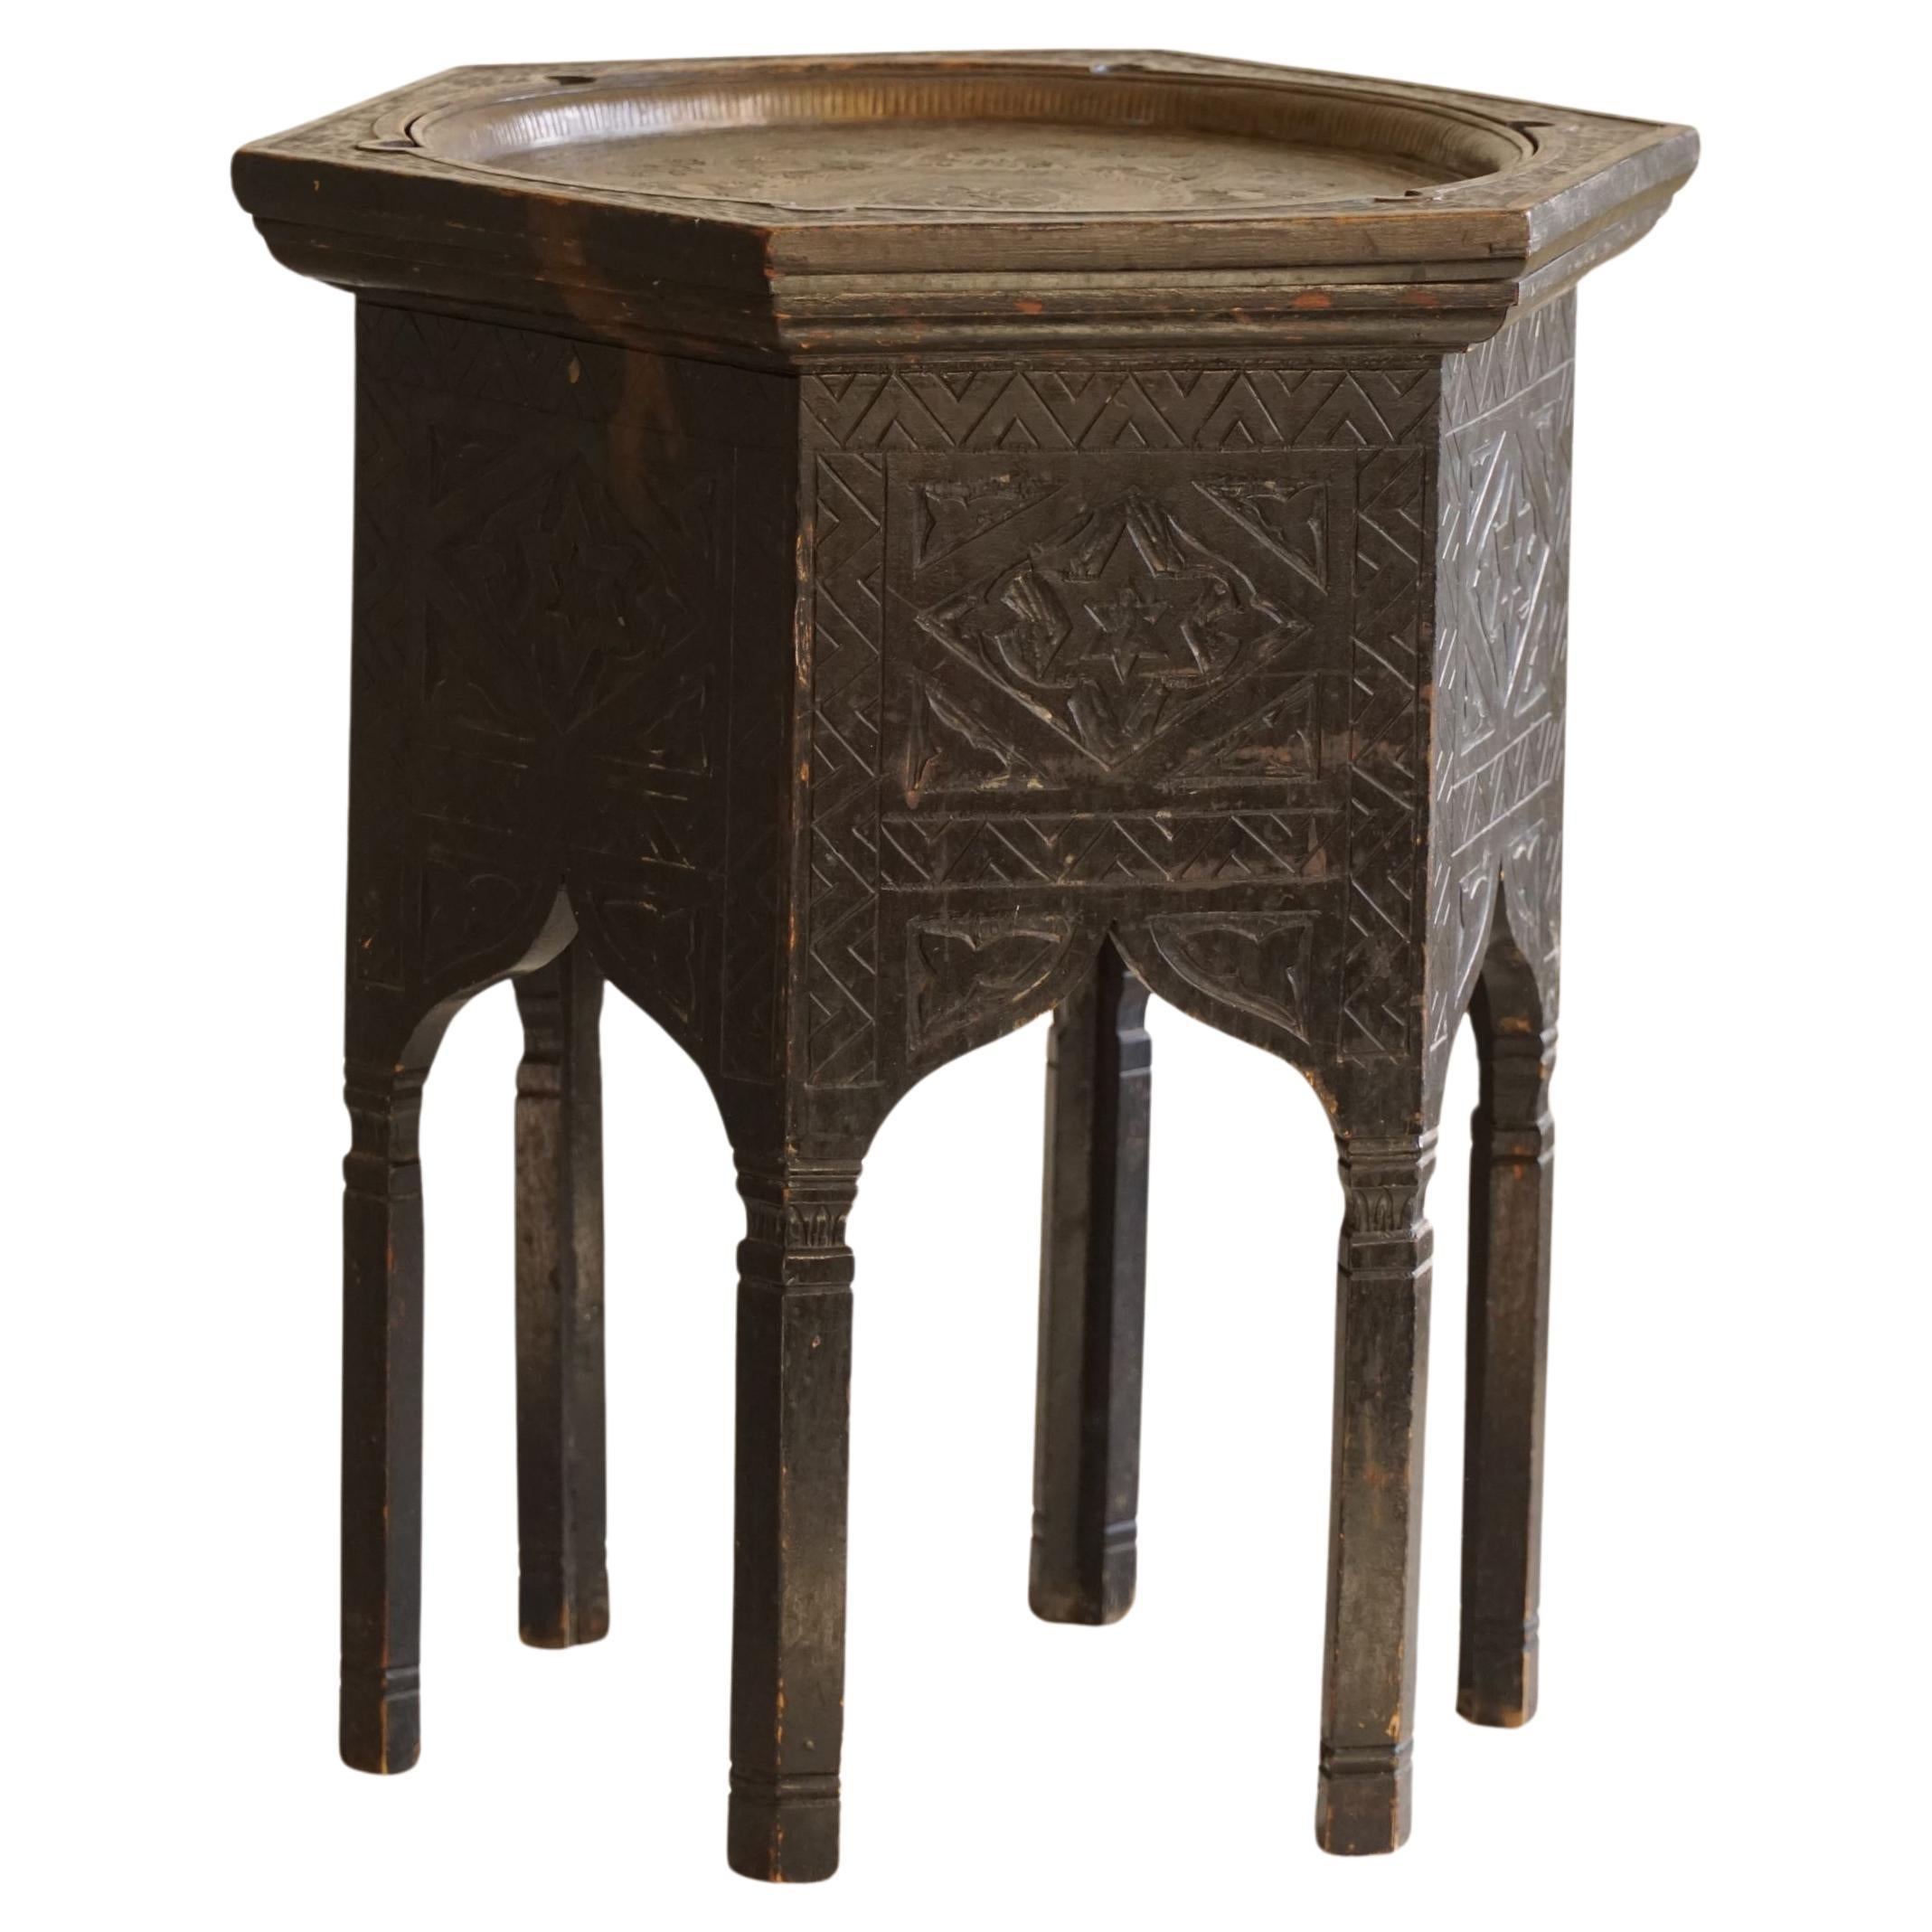 Table d'appoint anglo-indienne en bois dur de forme hexagonale, fin du XIXe siècle